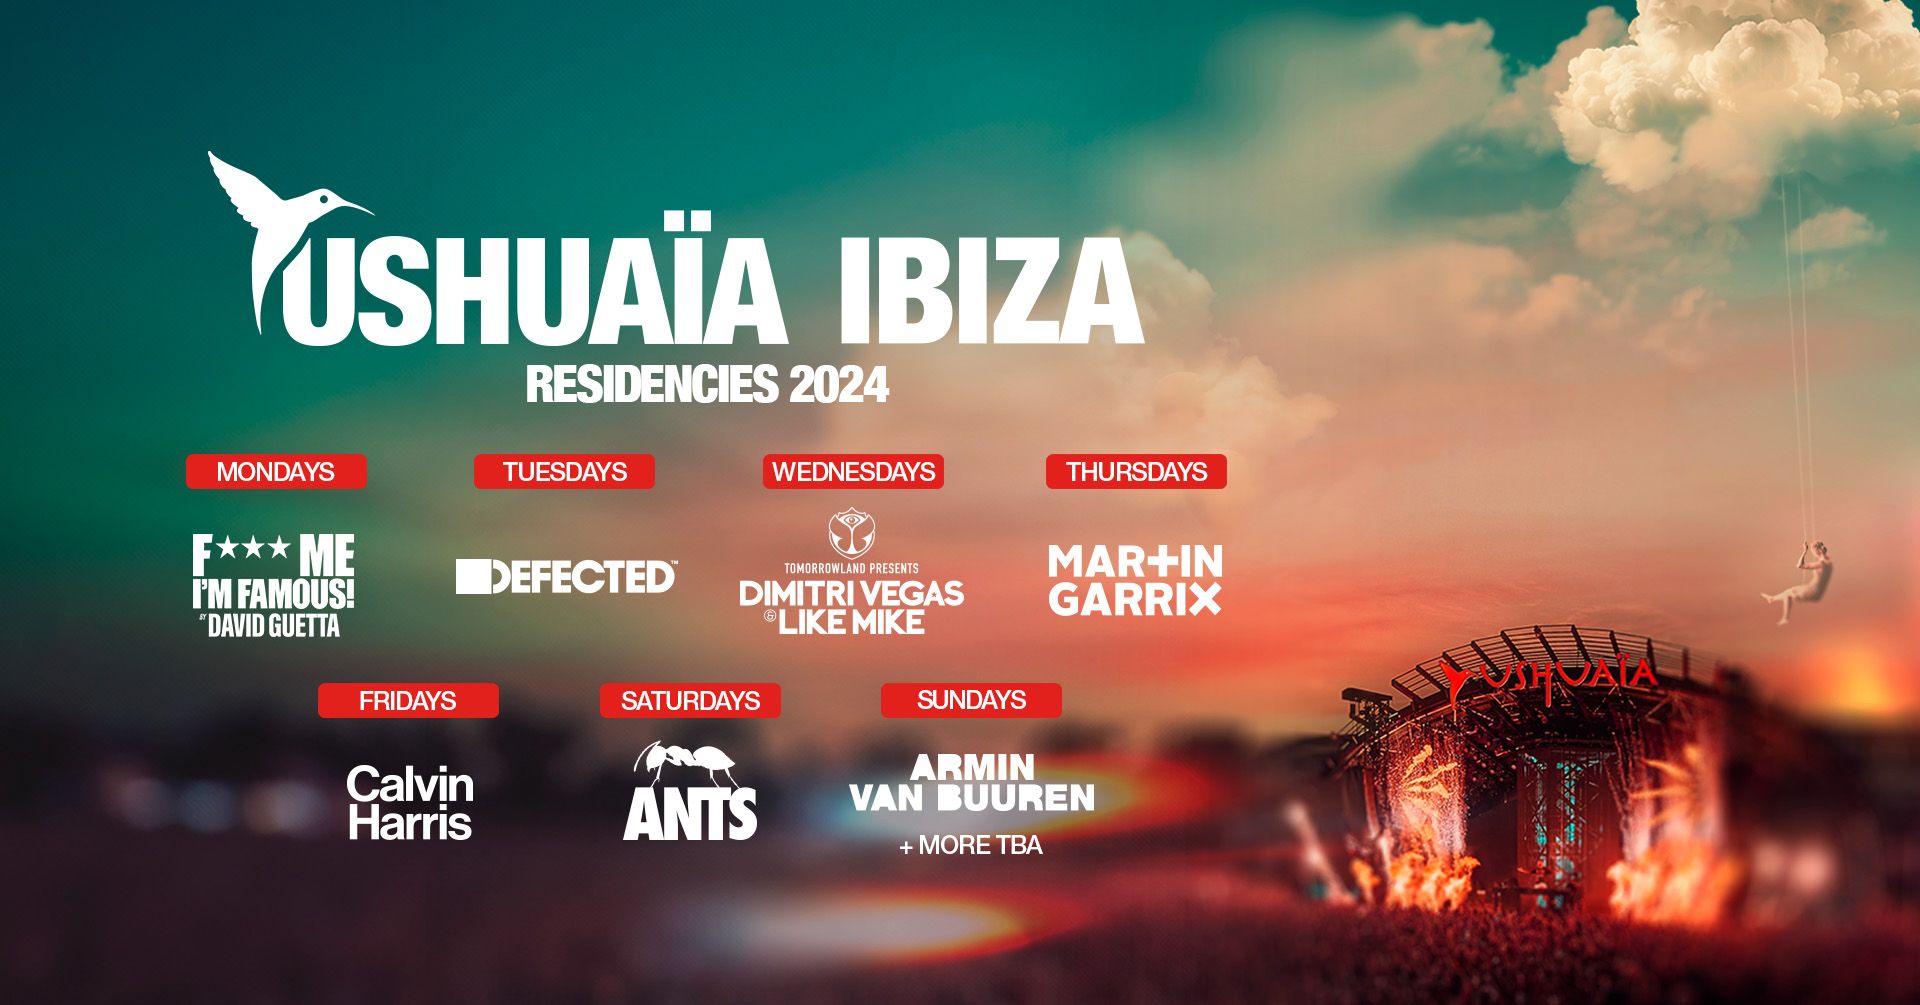 Ushuaïa Ibiza comienza a desvelar sus residencias de 2024